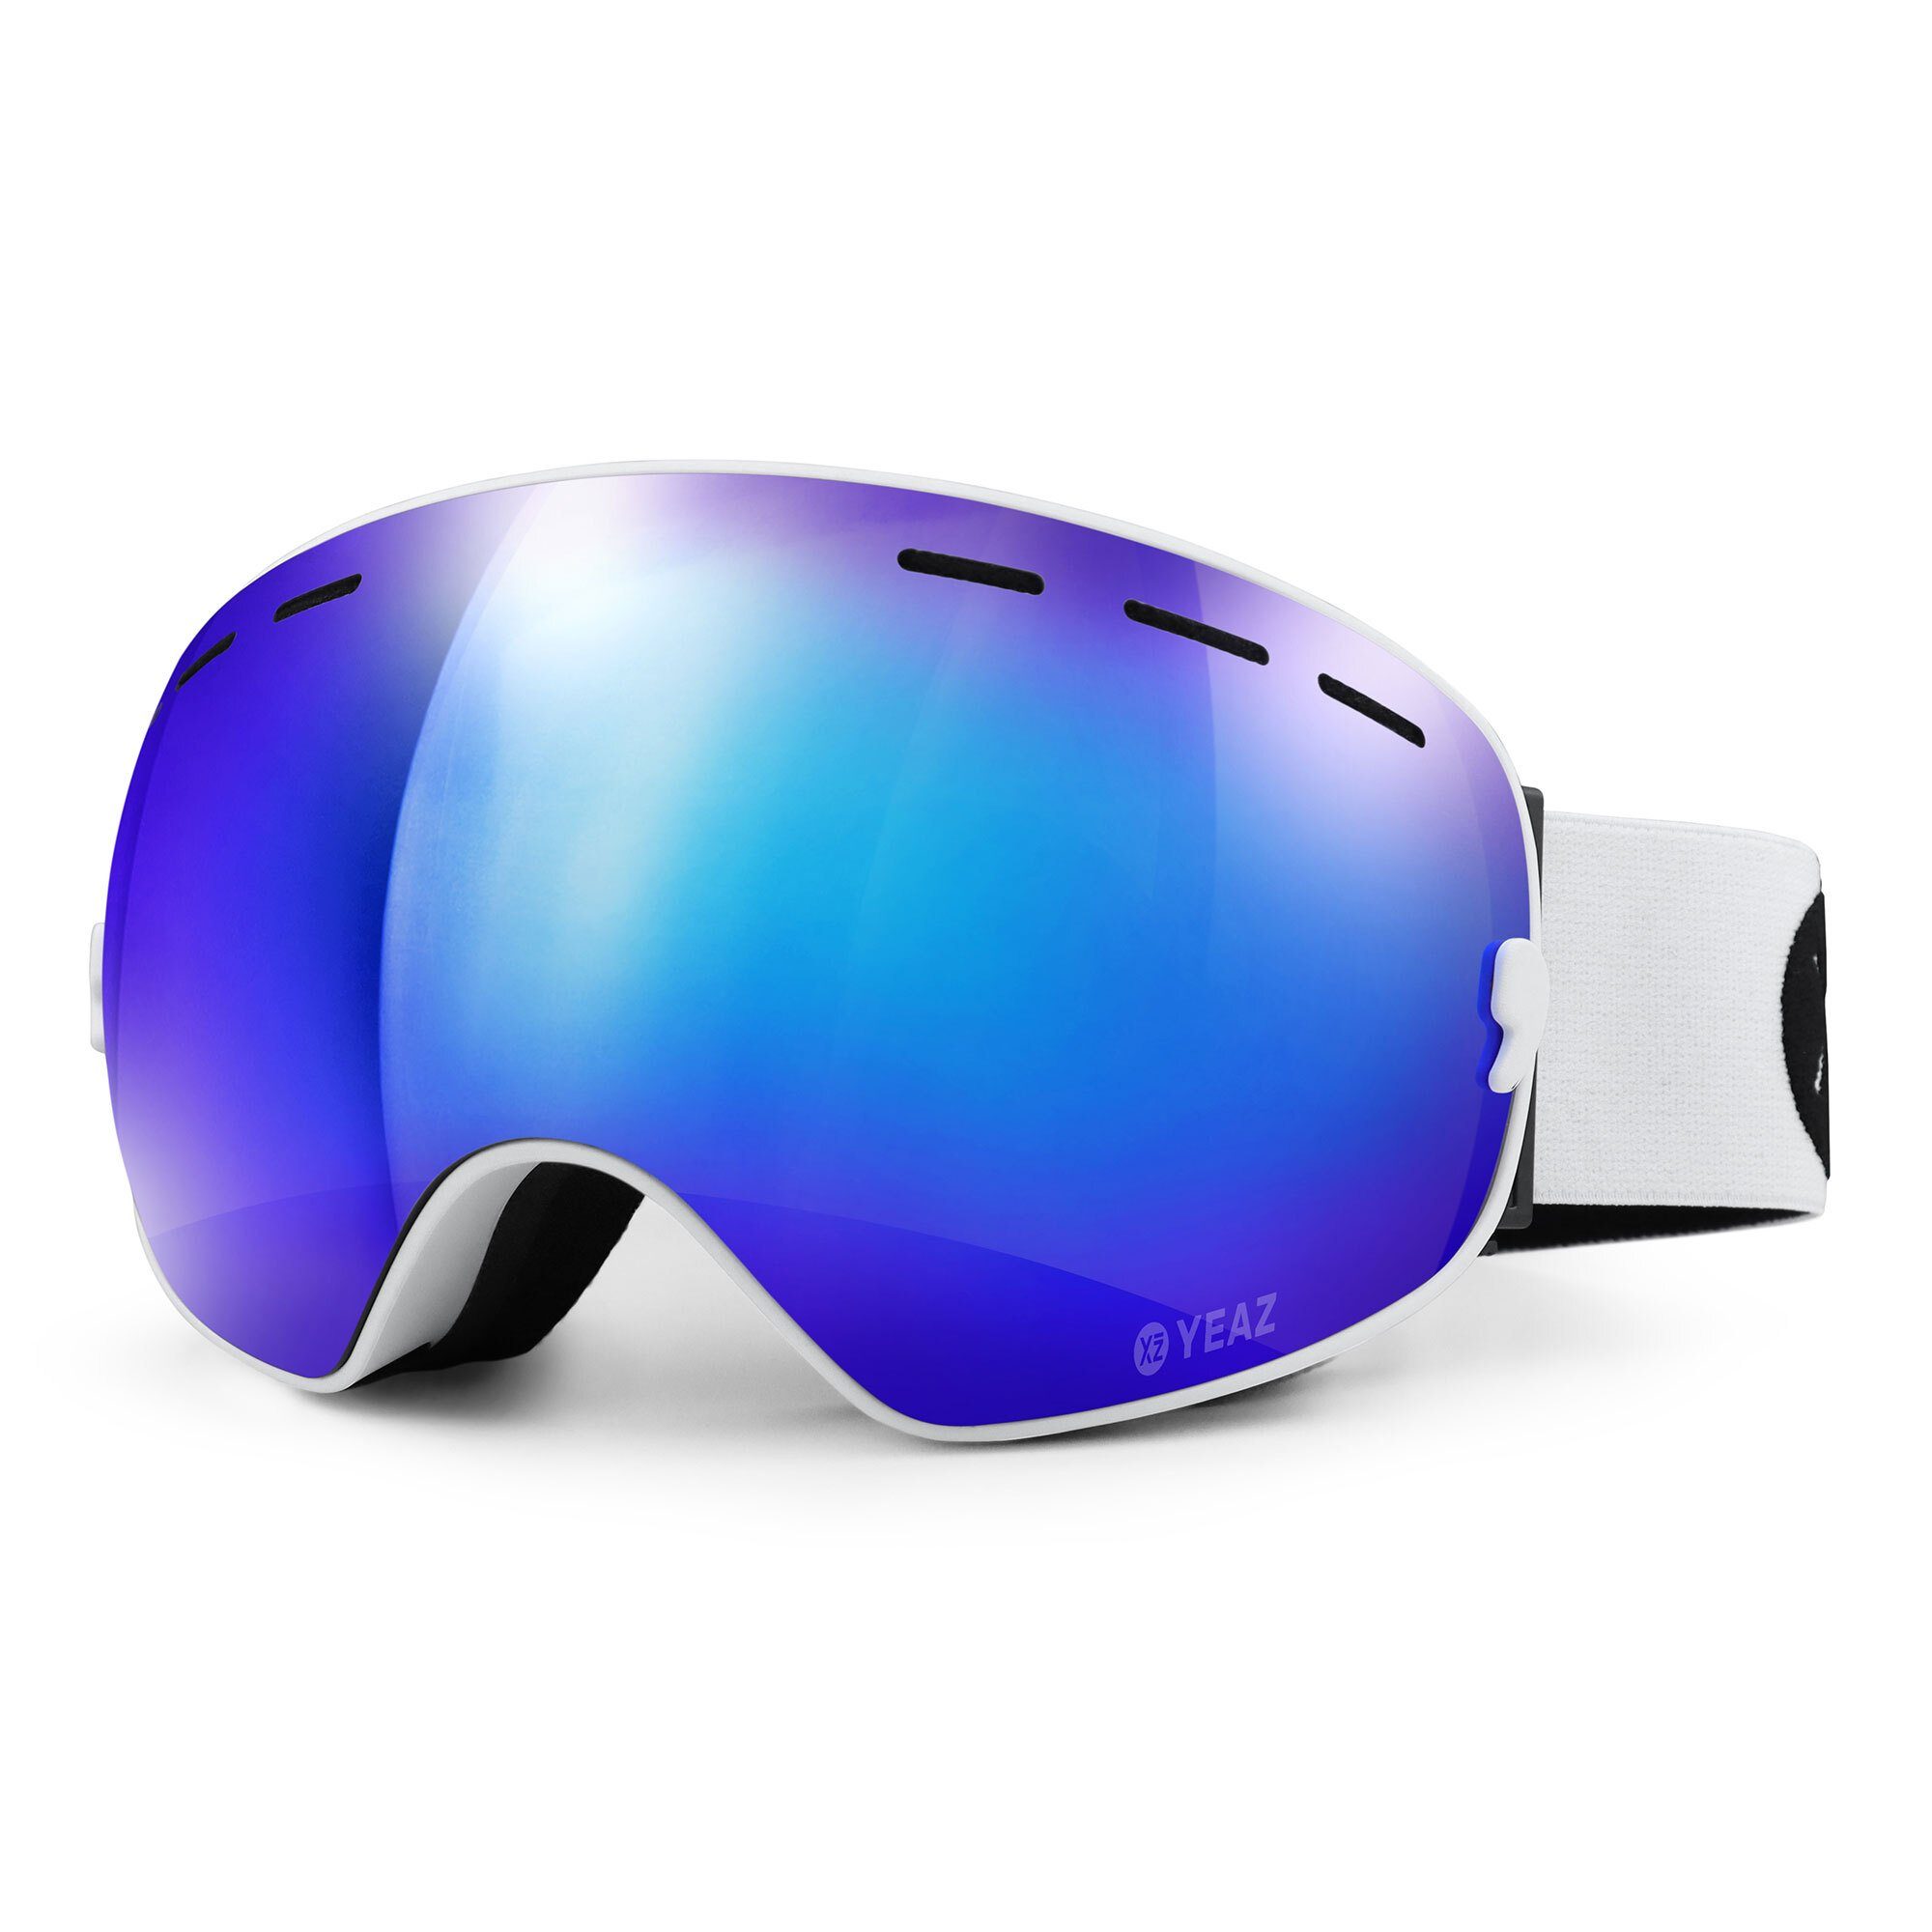 YEAZ Skibrille XTRM-SUMMIT ski- snowboardbrille Snowboardbrille verspiegelt, und Erwachsene Jugendliche für und Premium-Ski